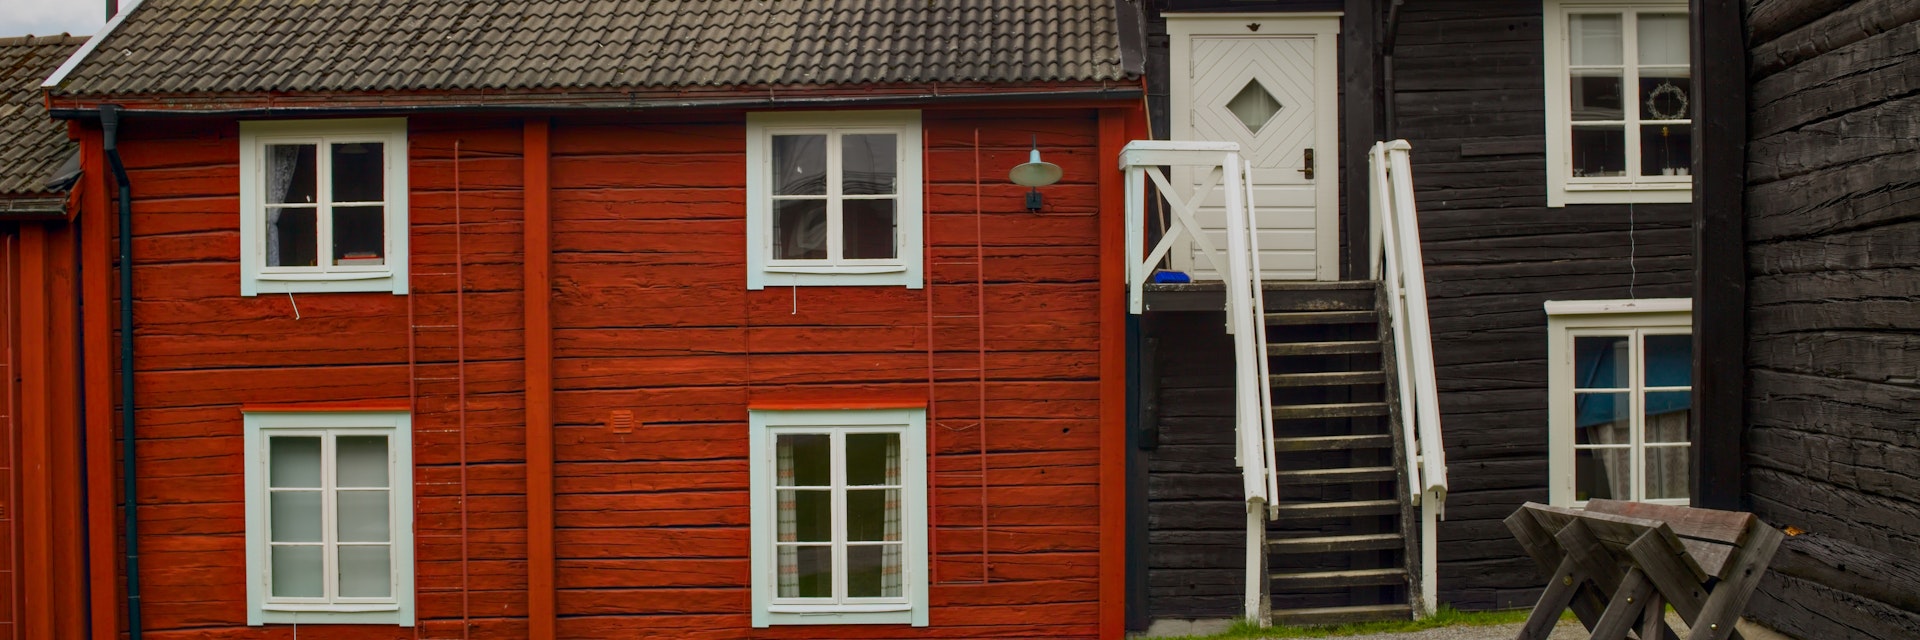 Row houses in the church village Kyrkstaden in Vilhelmina, Sweden.